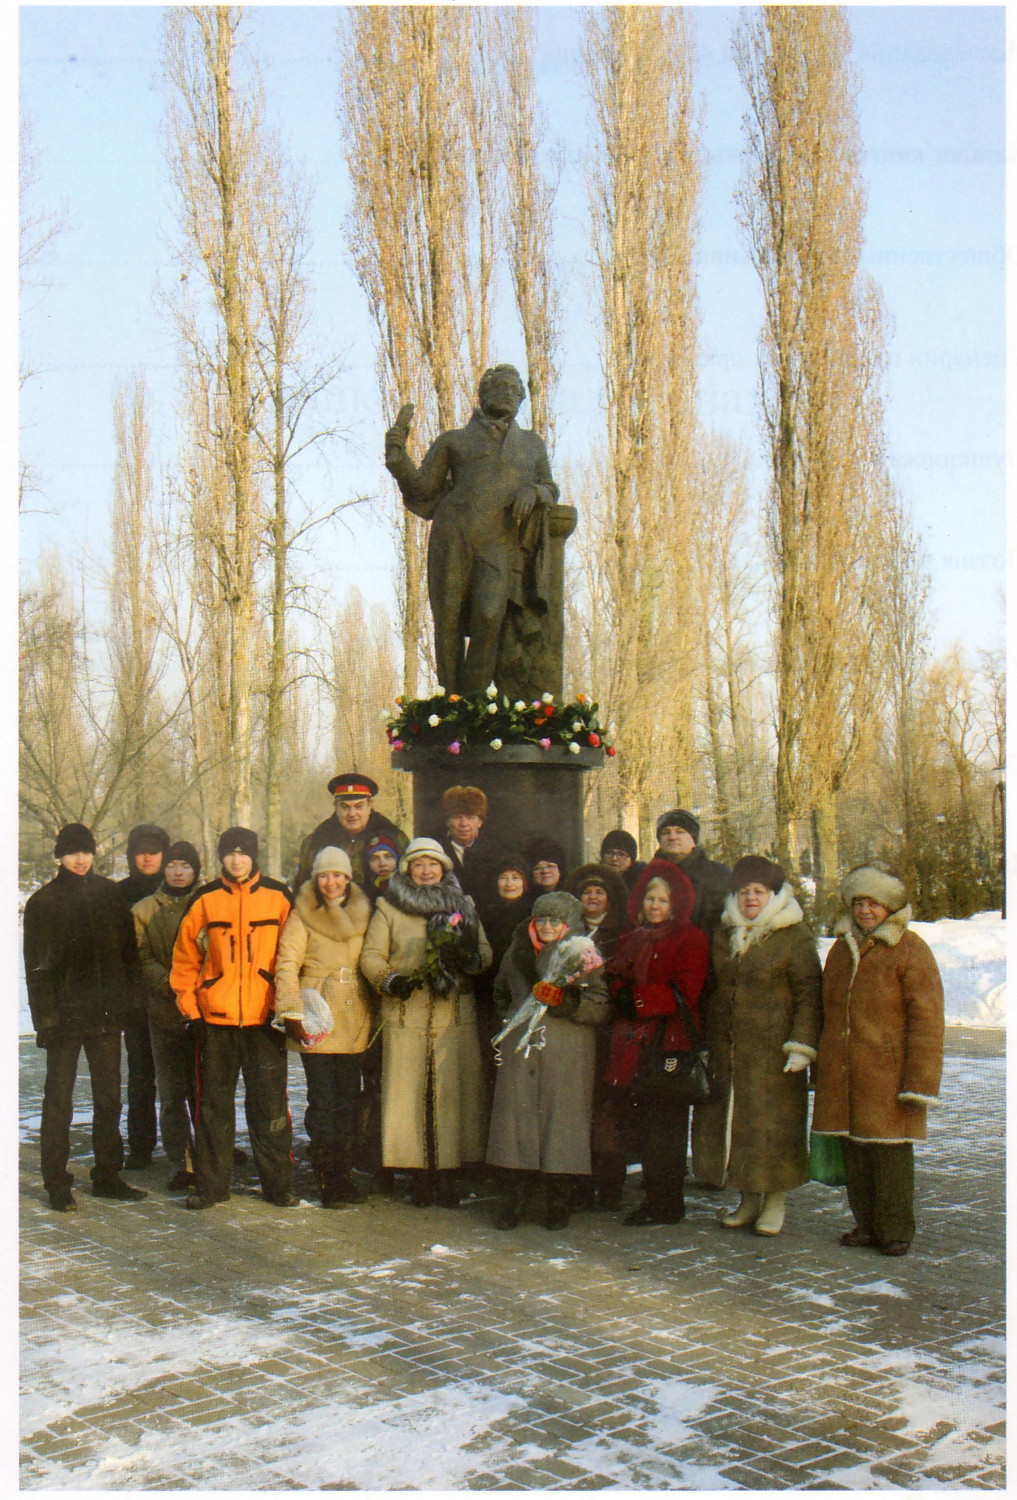 Таганрог. День памяти А. С. Пушкина. Фотография 10 февраля 2012 г.